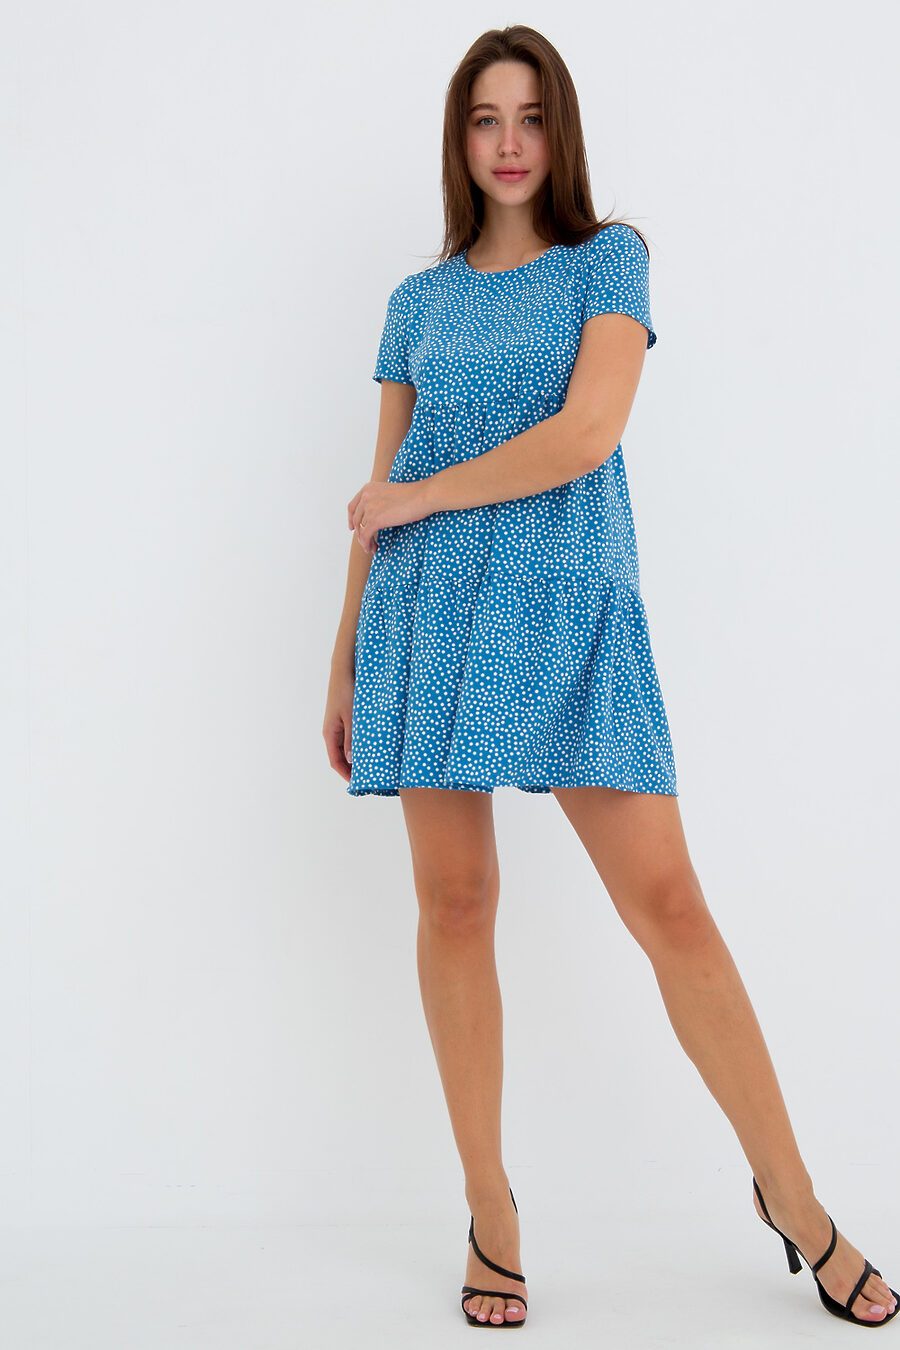 Платье П-7 для женщин НАТАЛИ 775470 купить оптом от производителя. Совместная покупка женской одежды в OptMoyo